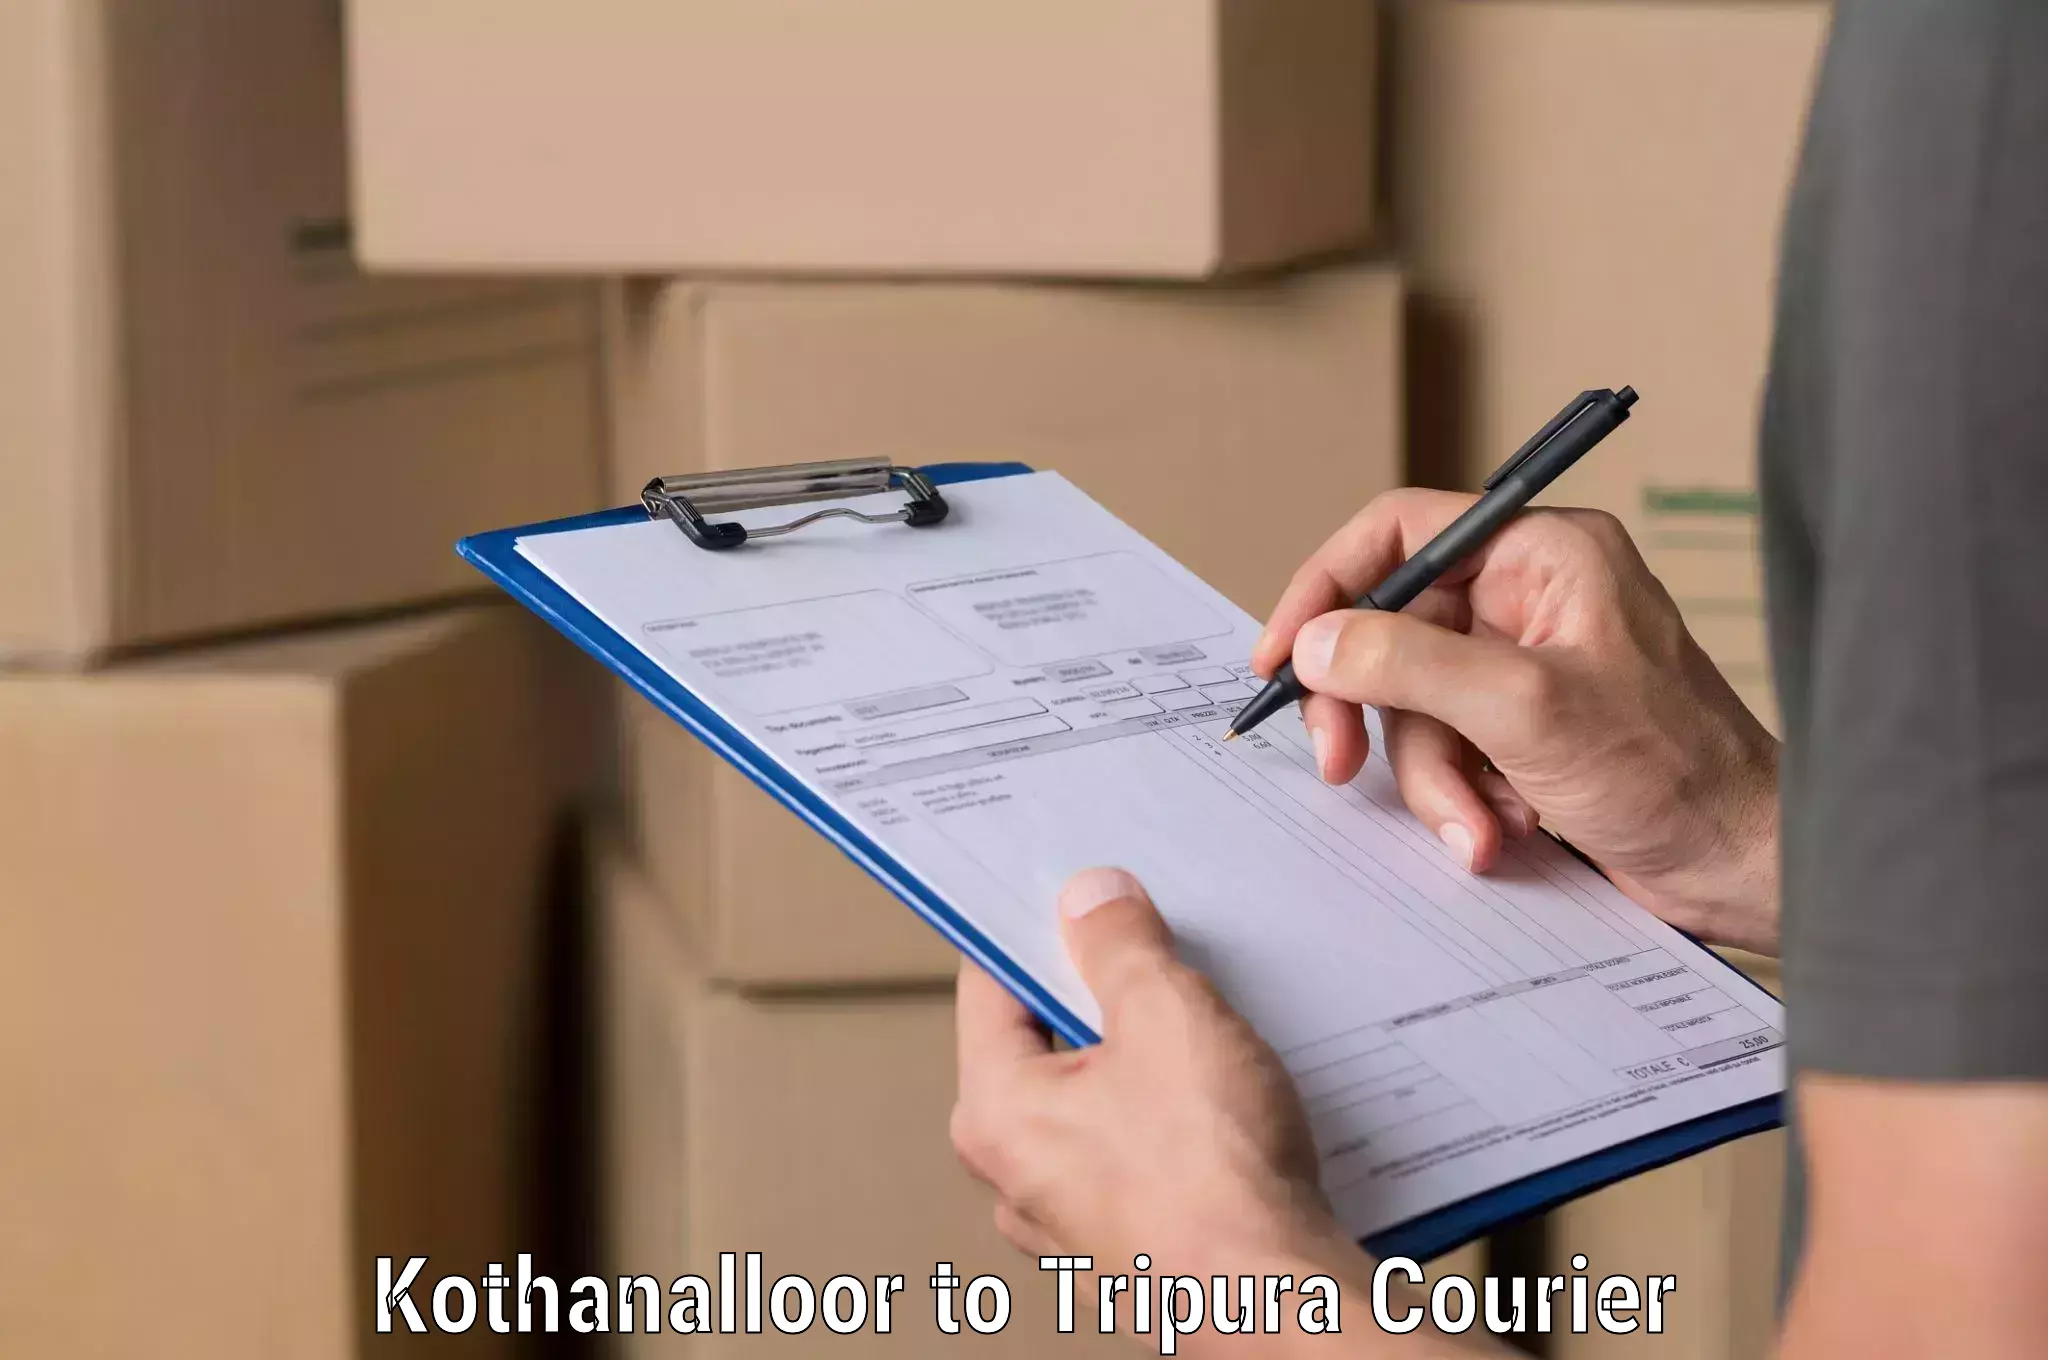 Optimized shipping services Kothanalloor to IIIT Agartala